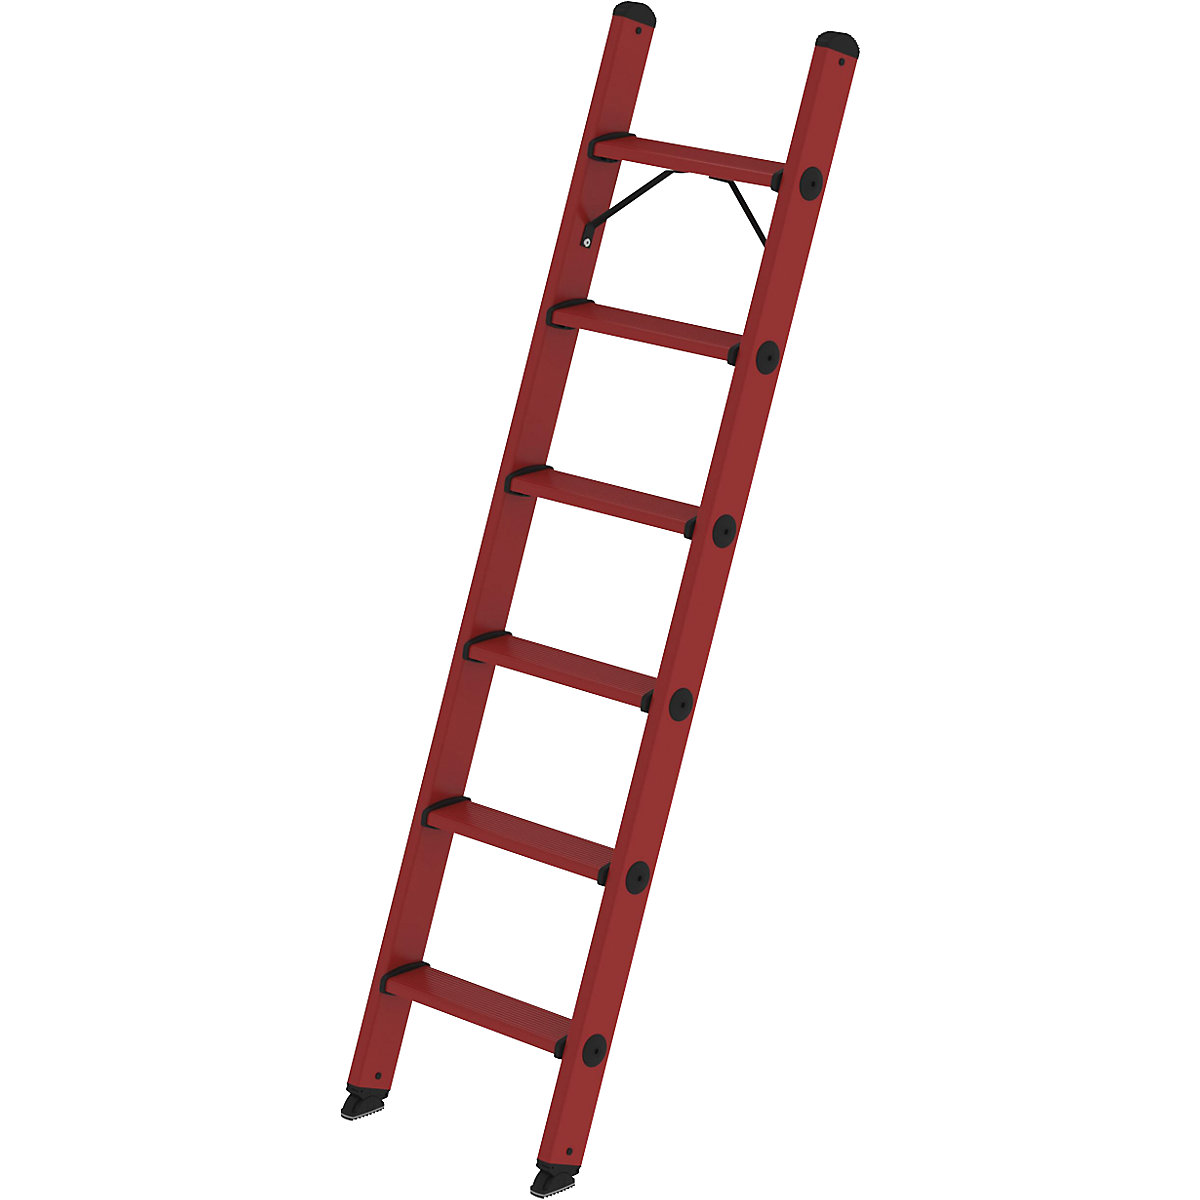 Prislonska lestev s stopnicami iz fiberglasa - MUNK